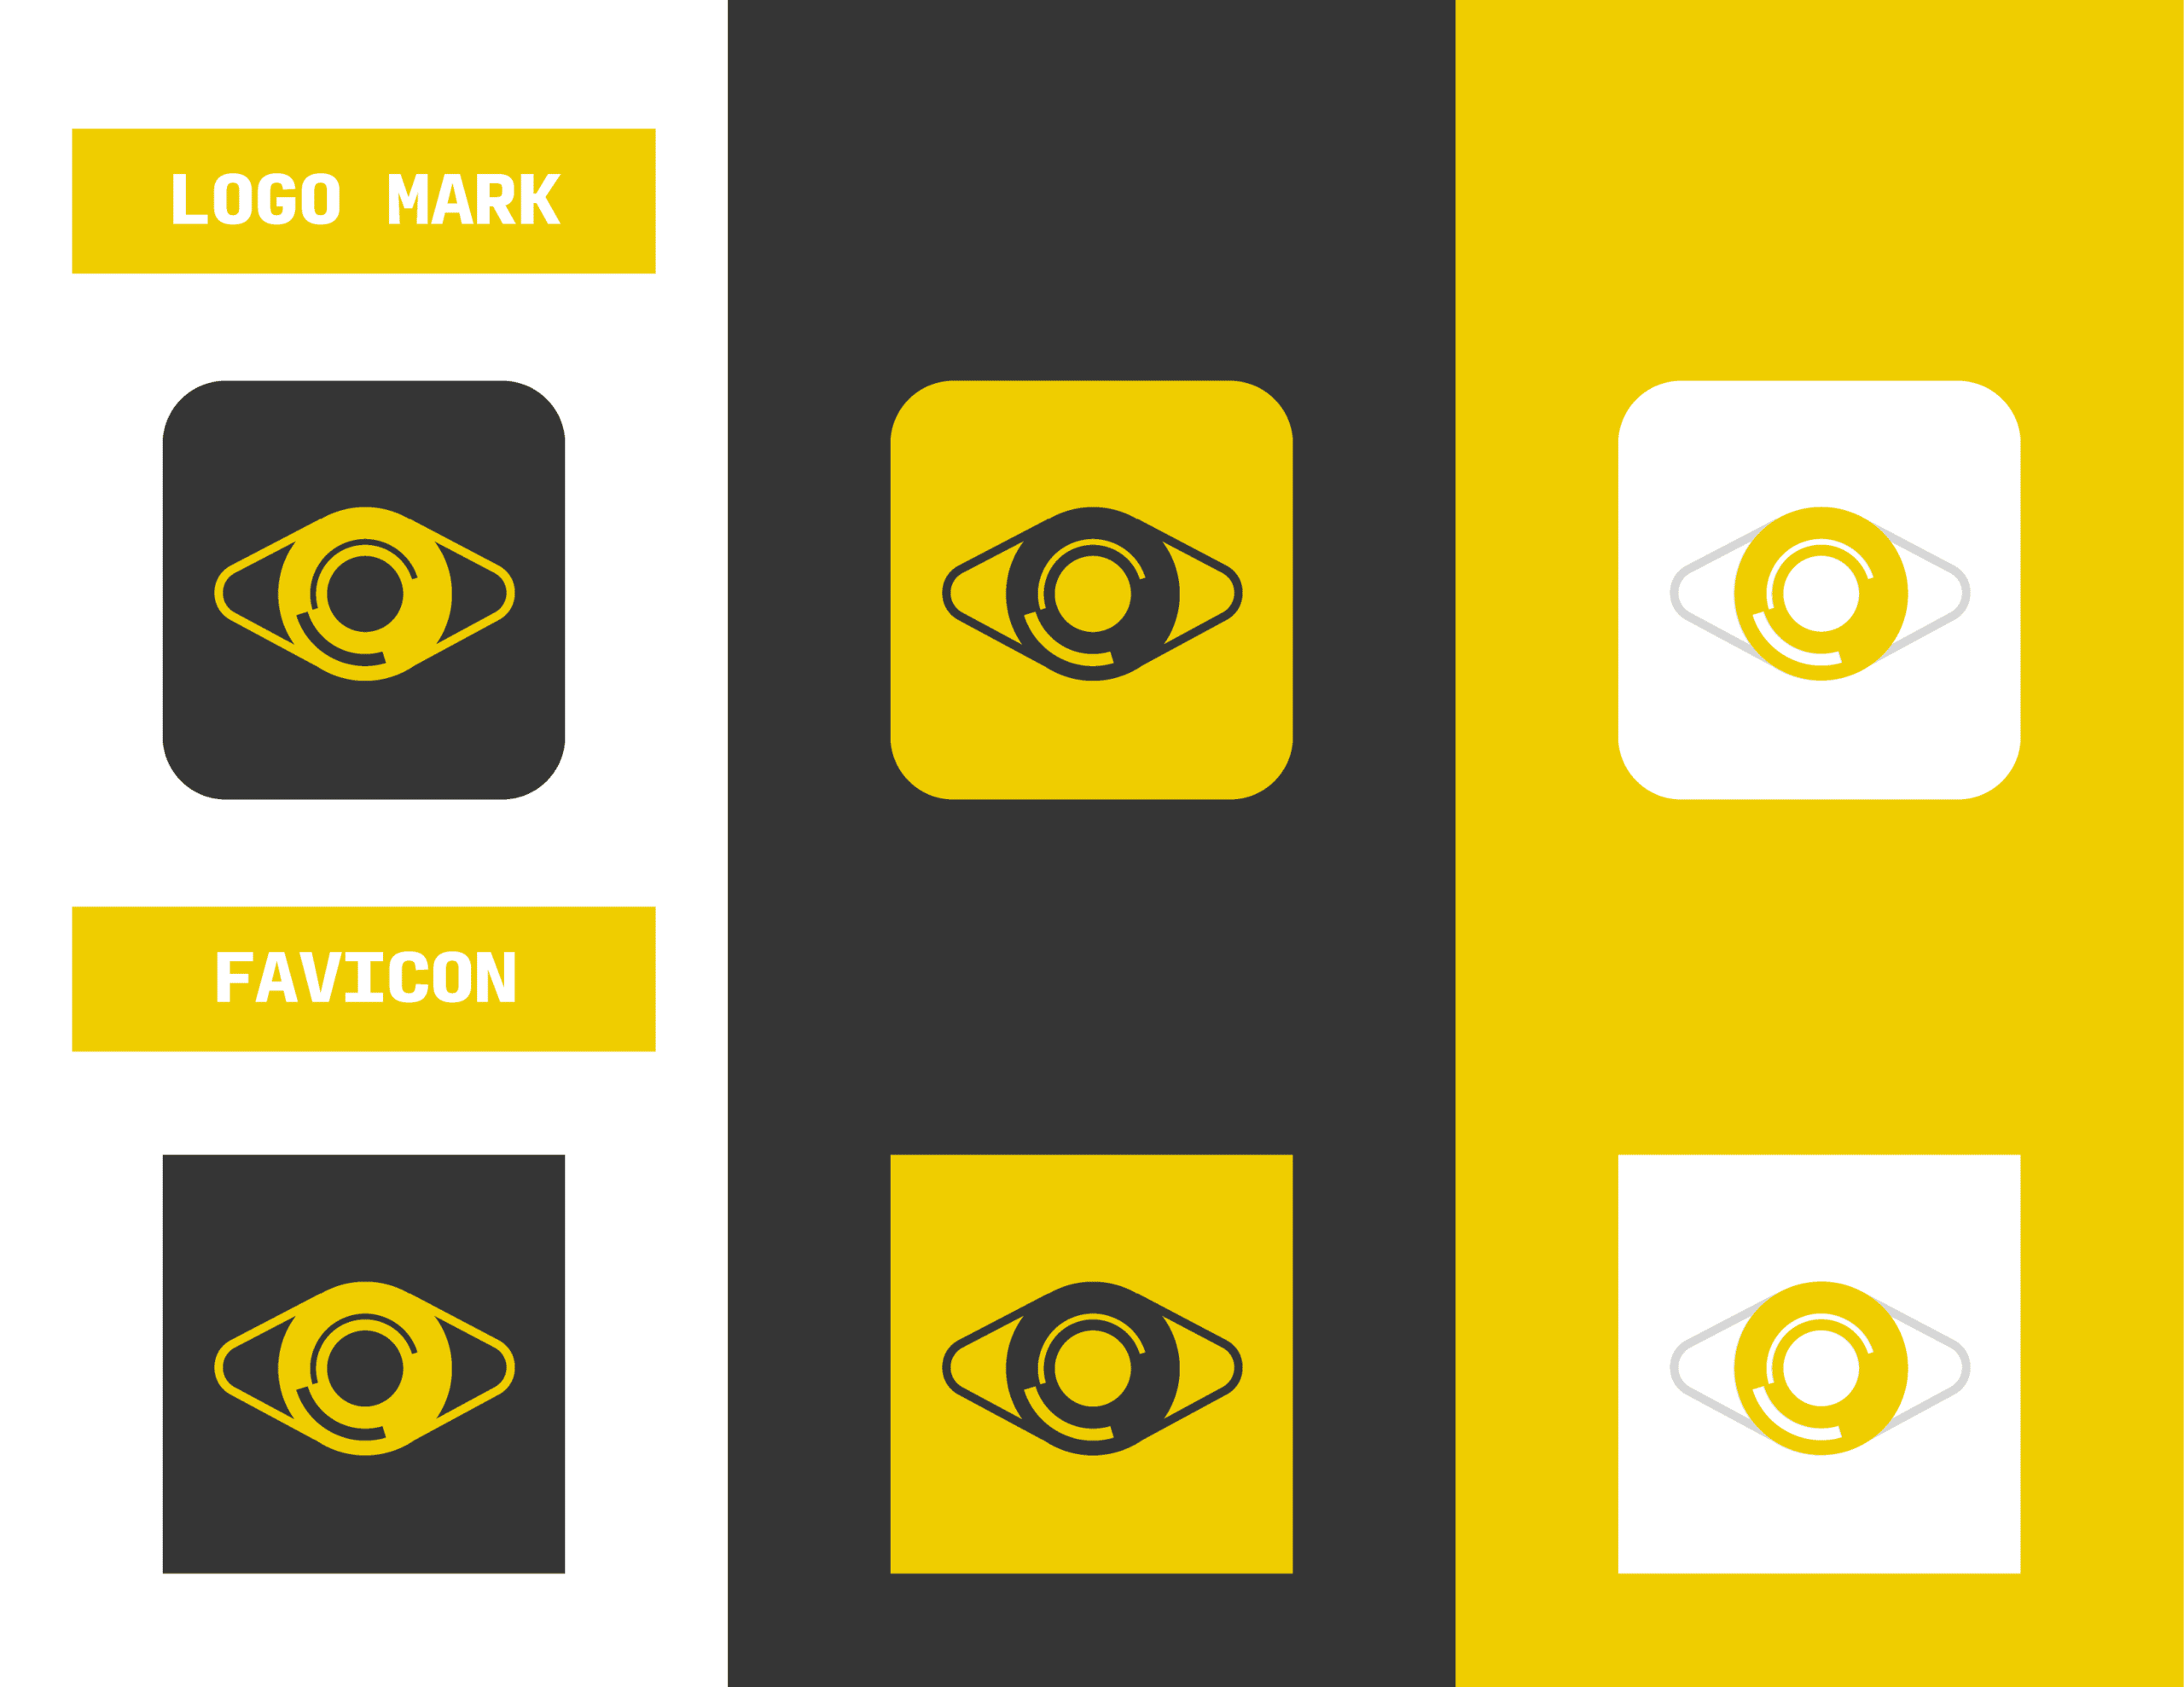 02BionicBK_Logo Mark and Favicon